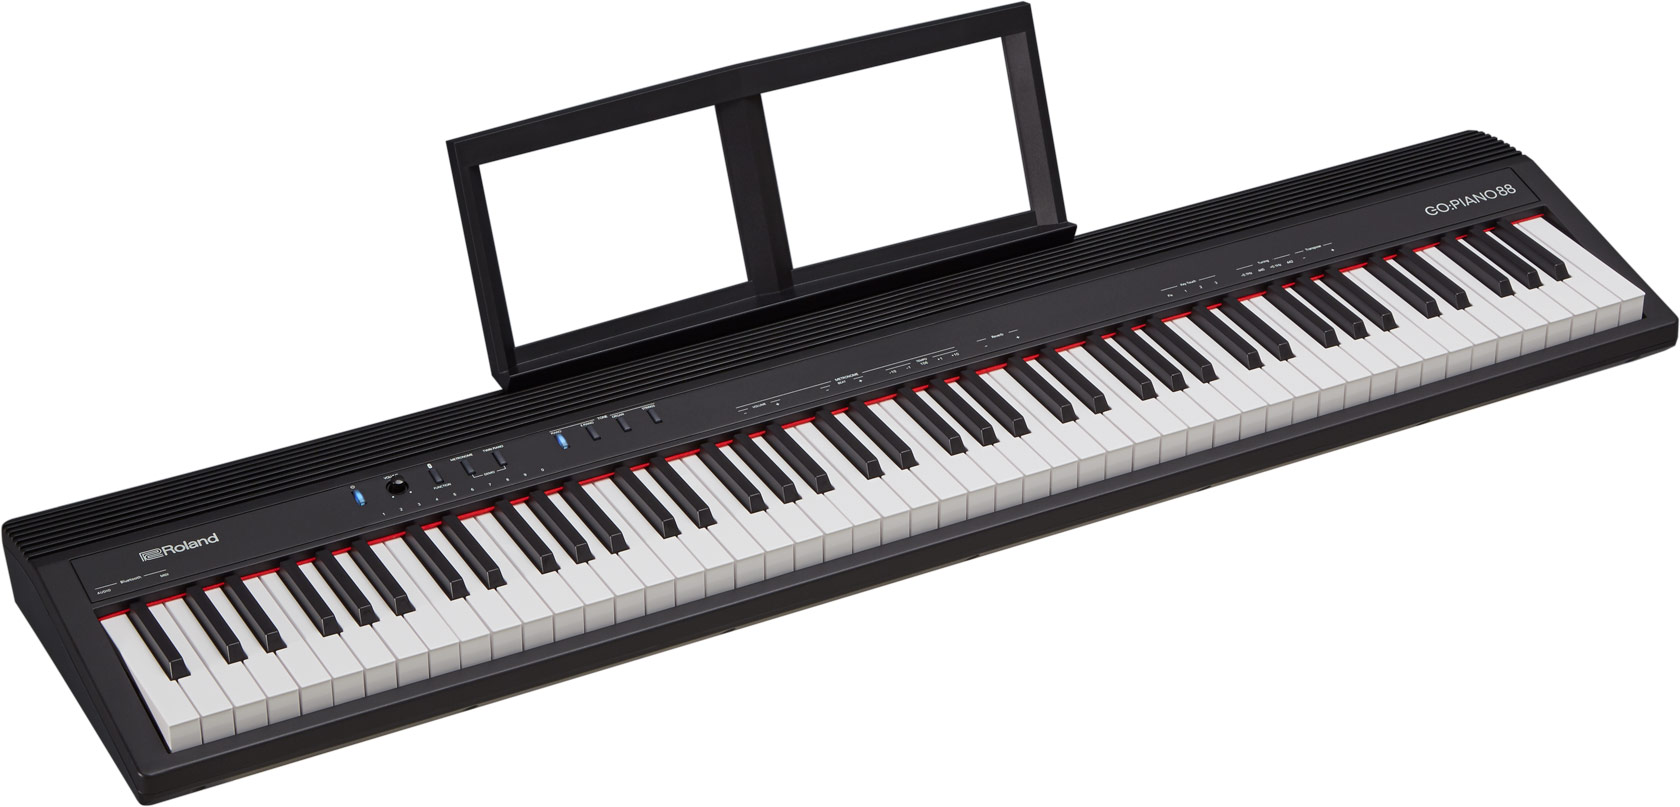 Roland Go:piano 88 - Piano digital portatil - Variation 1